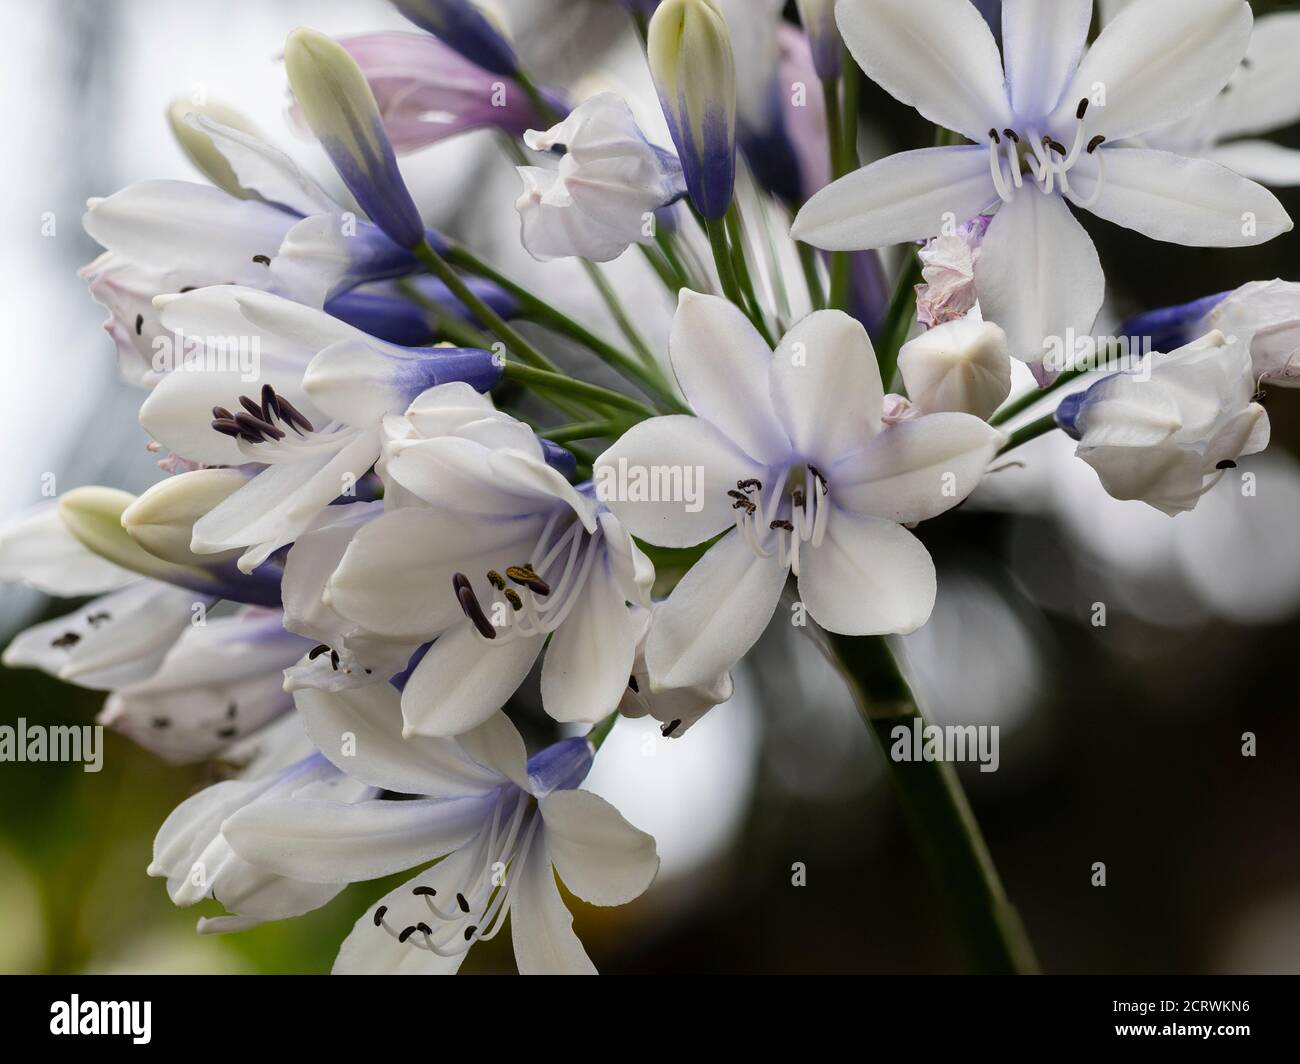 Fiori tubolari blu e bianchi nella testa dei fiori di L'agapanthus perenne "Twister" Foto Stock